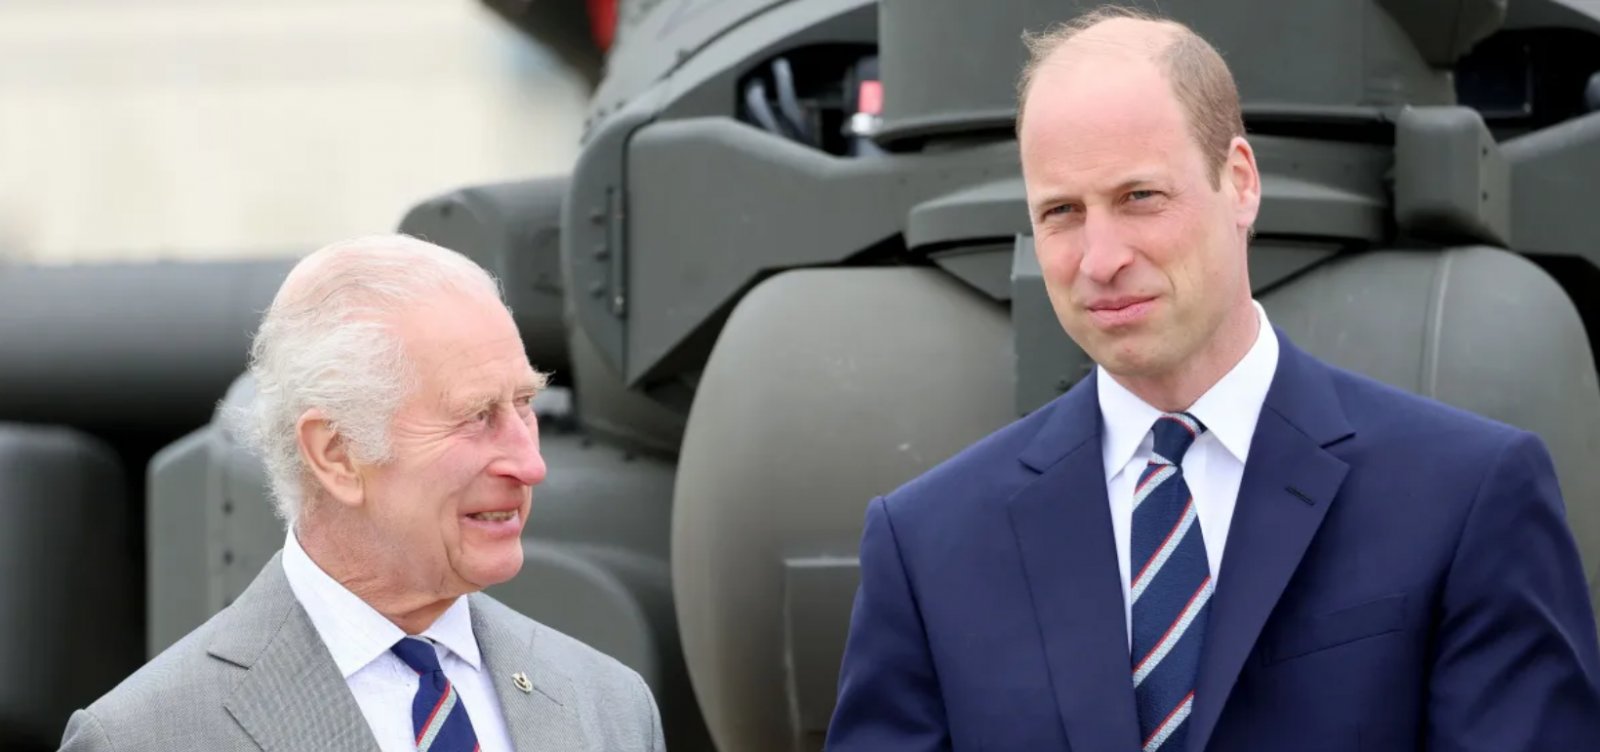 Príncipe William recebeu um alto cargo militar do pai, o rei britânico Charles III, em uma cerimônia nesta segunda-feira